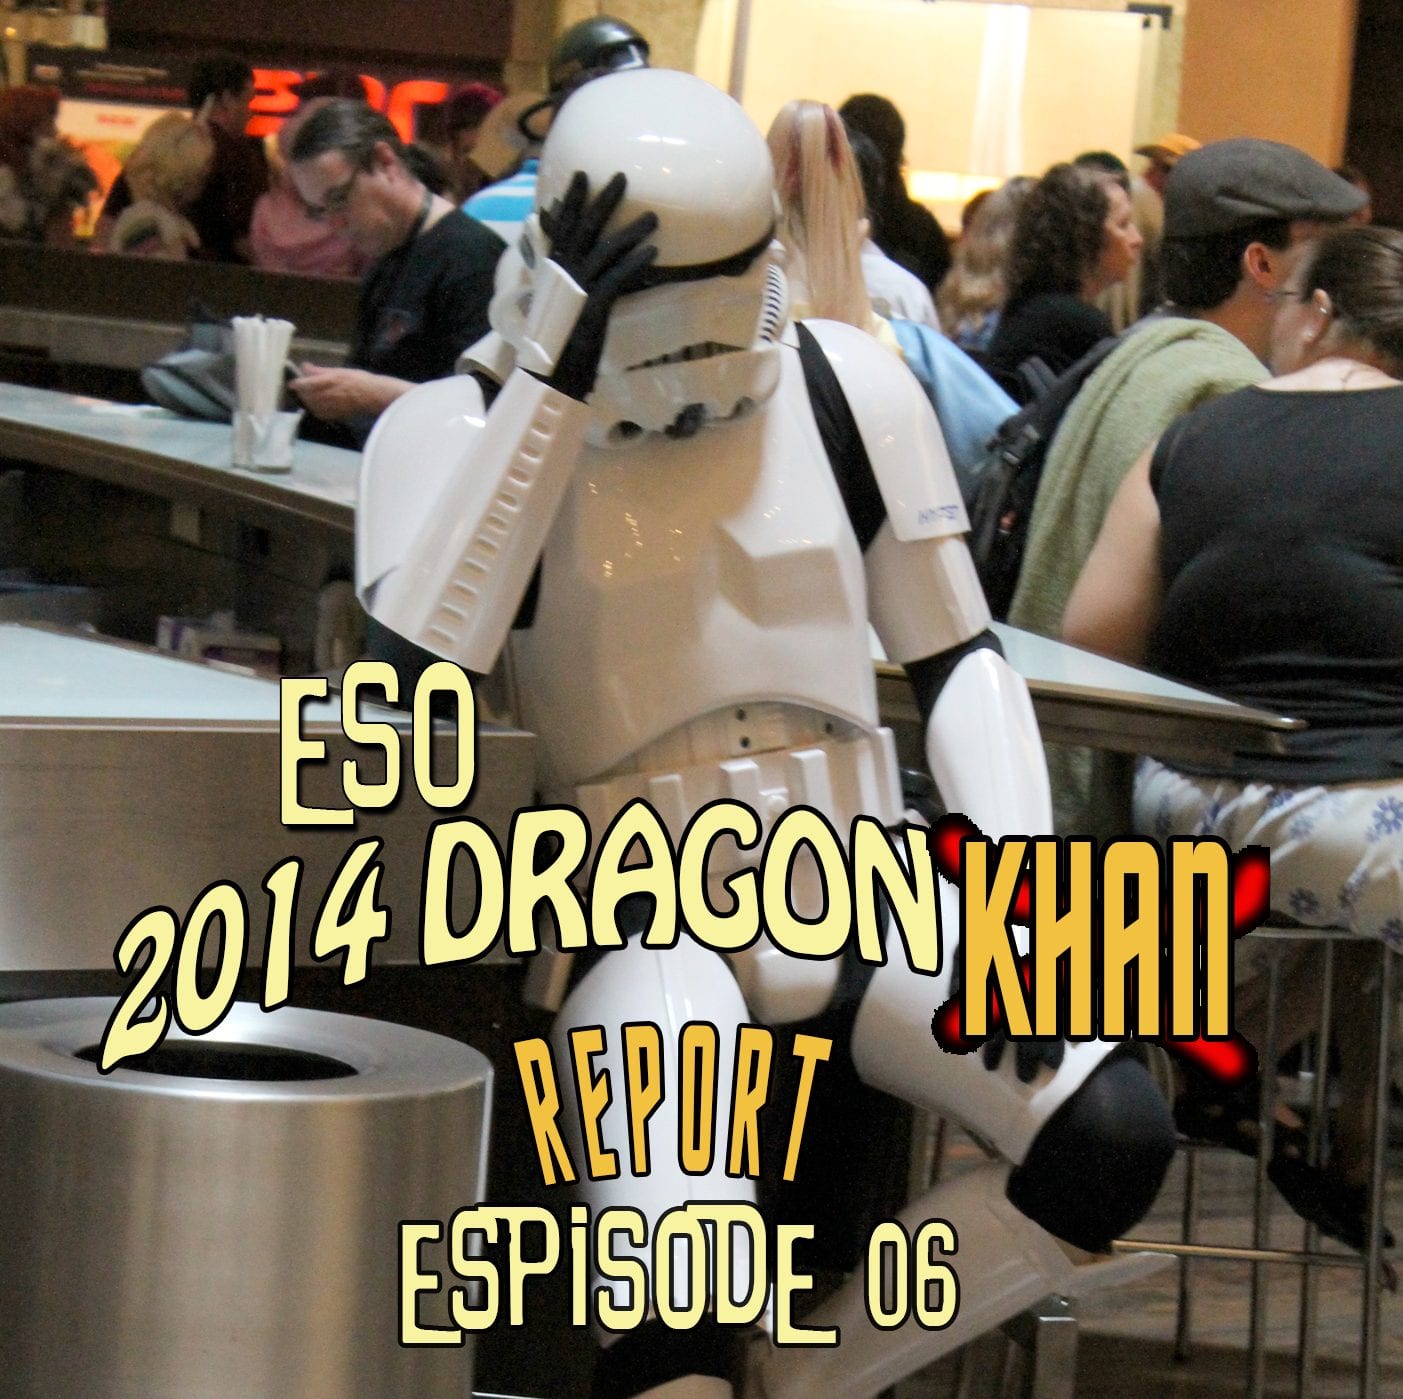 The ESO 2014 DragonCon Khan Report Ep 6